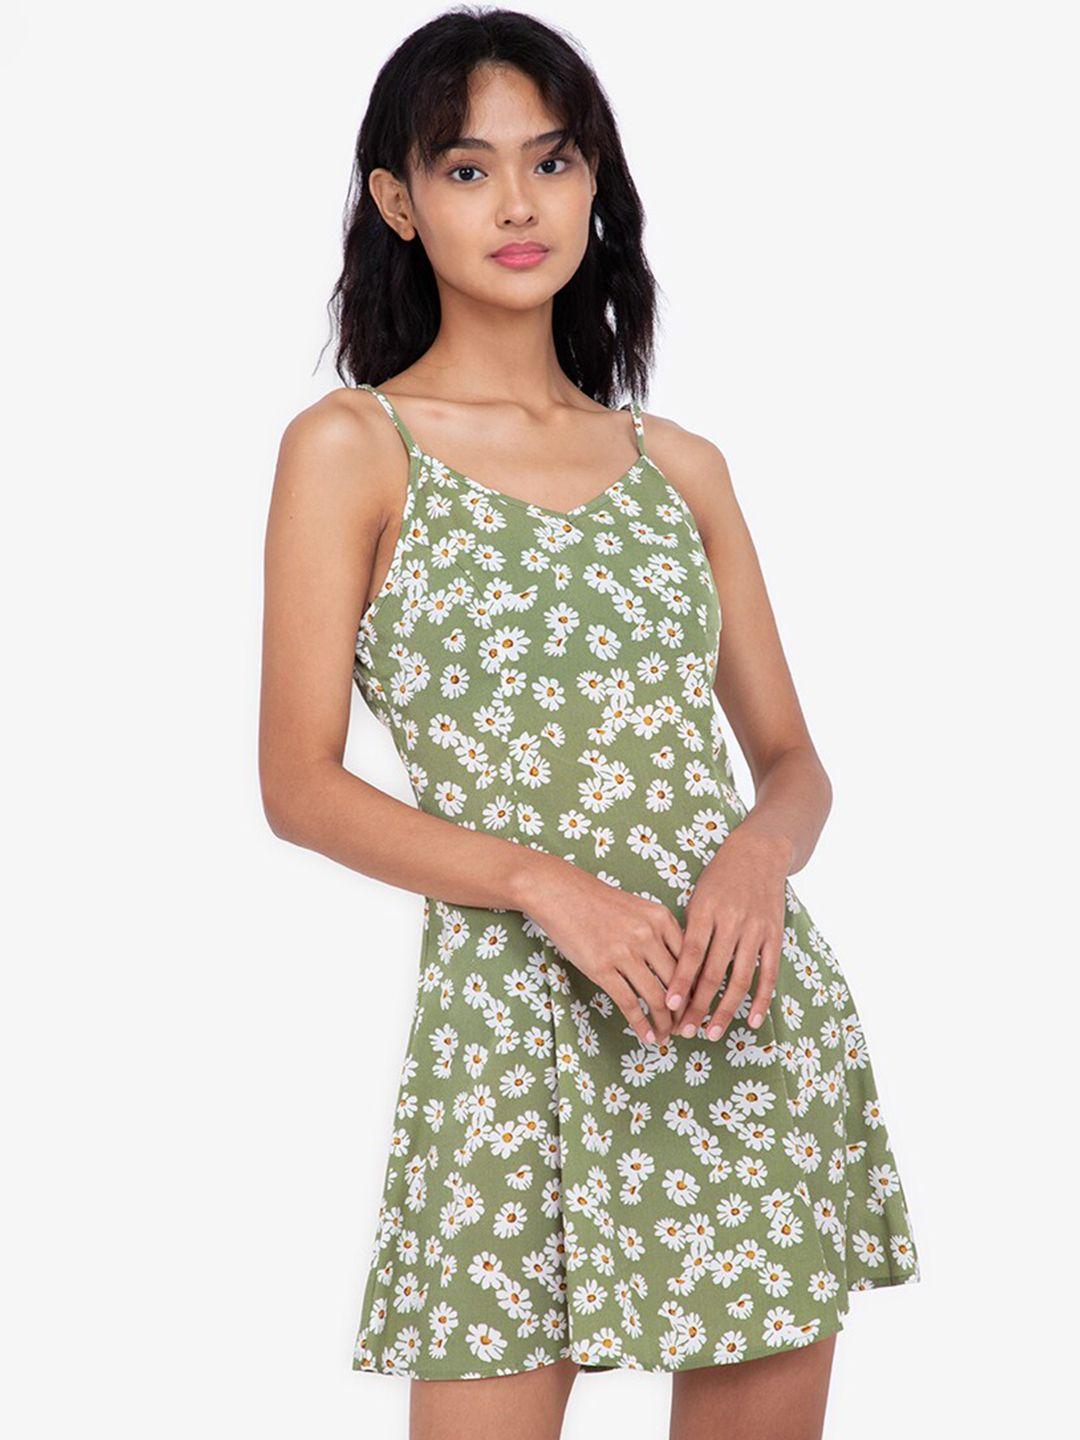 zalora basics women green & white floral printed strappy a-line dress